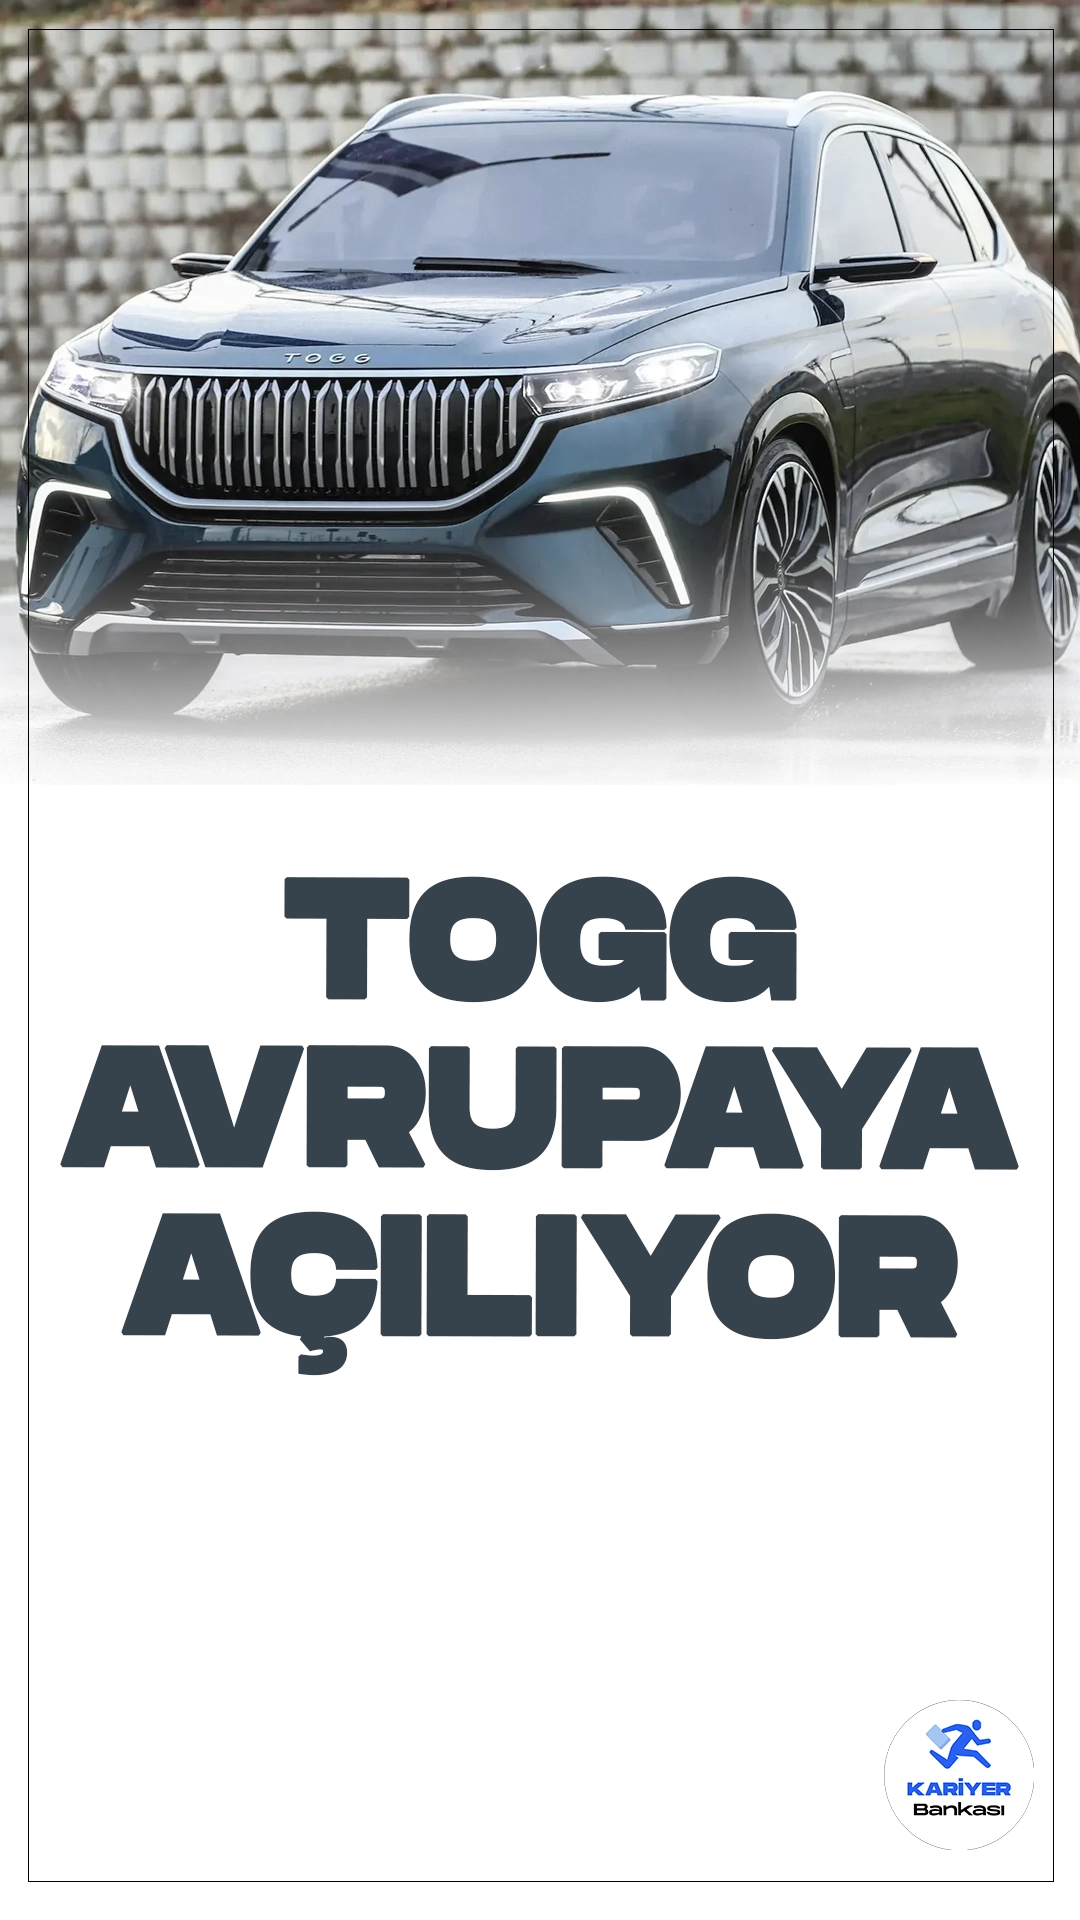 Togg 6'ncı Yılında Avrupa'ya Açılıyor.Cumhurbaşkanı Recep Tayyip Erdoğan'ın önderliğinde 25 Haziran 2018'de kurulan Togg, ürettiği ilk akıllı cihazı T10X ile Türkiye elektrikli otomobil pazarında lider olurken, gelecek yılın başından itibaren yeni modelleriyle Avrupa pazarlarına da girmeye hazırlanıyor.